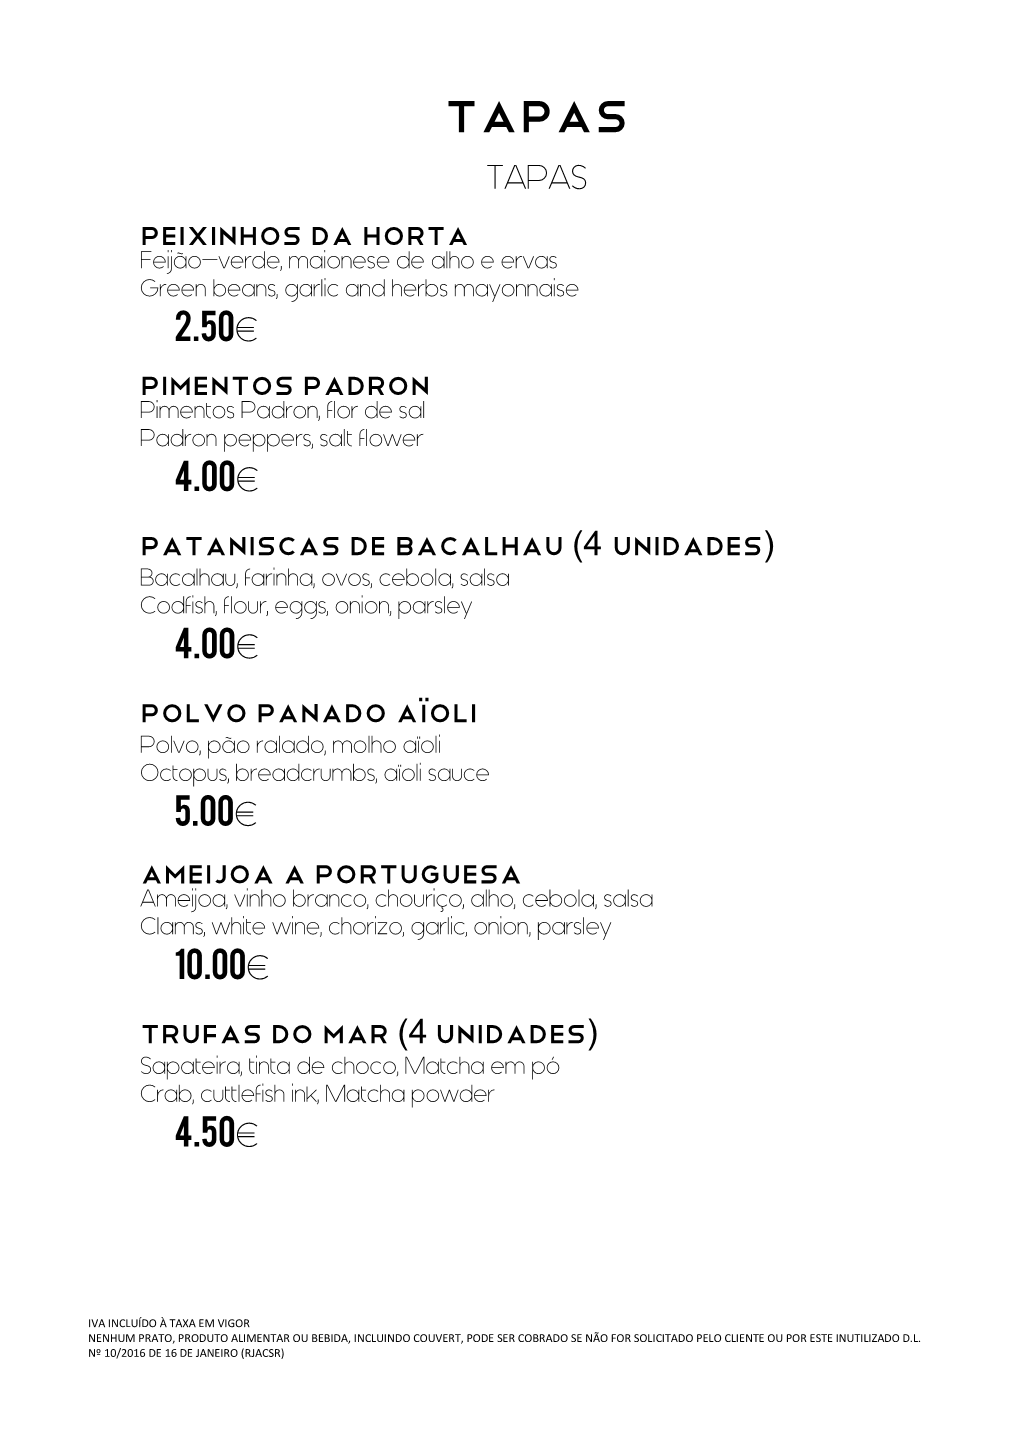 TAPAS Peixinhos Da Horta 2.50€ Pimentos Padron 4.00€ Pataniscas